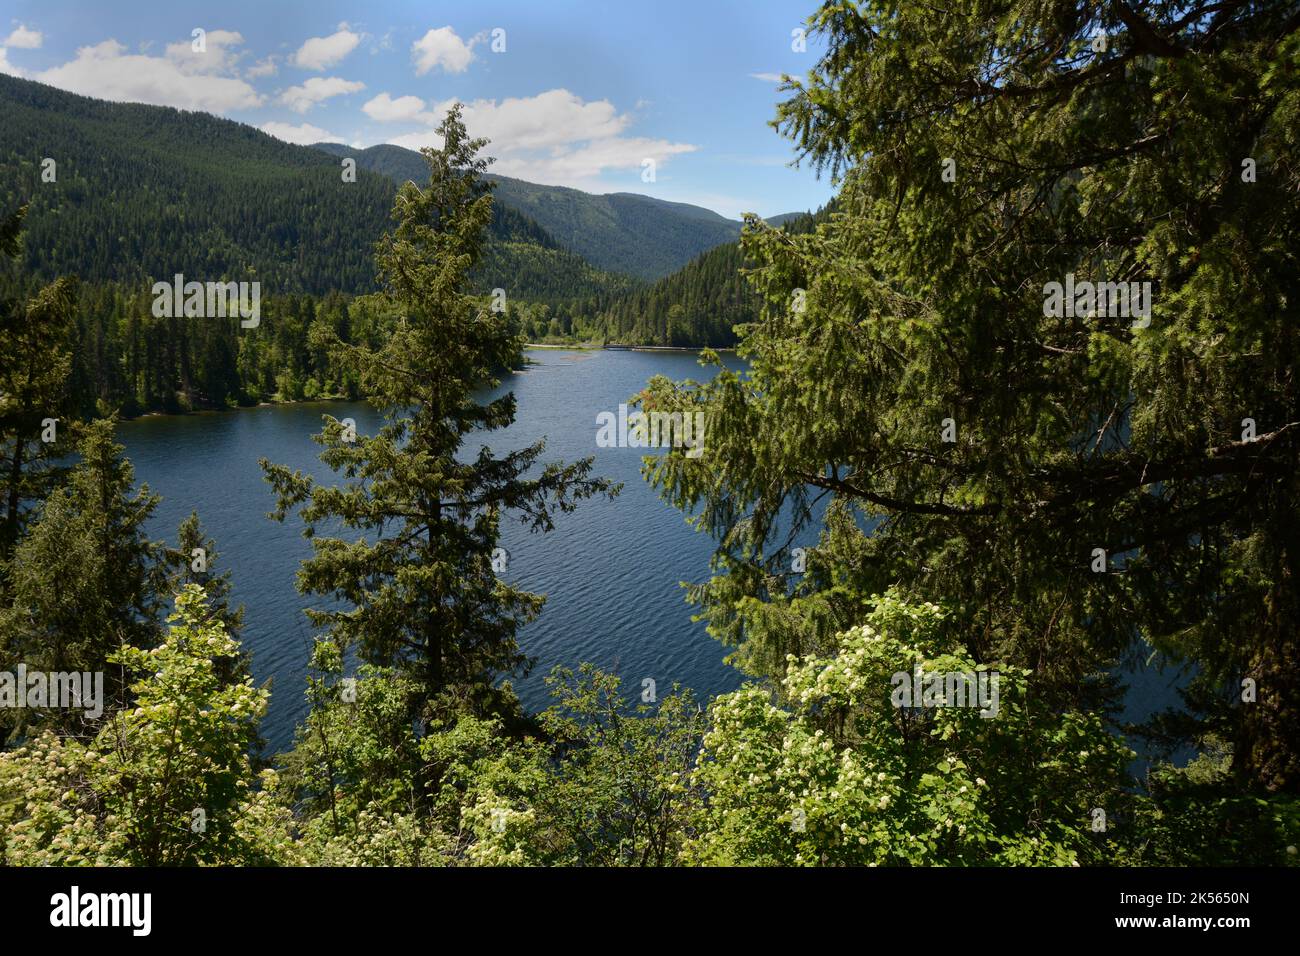 Vue sur le lac Sullivan, depuis un sentier de randonnée au-dessus du rivage, dans les montagnes Selkirk de la forêt nationale de Colville, État de Washington, États-Unis. Banque D'Images